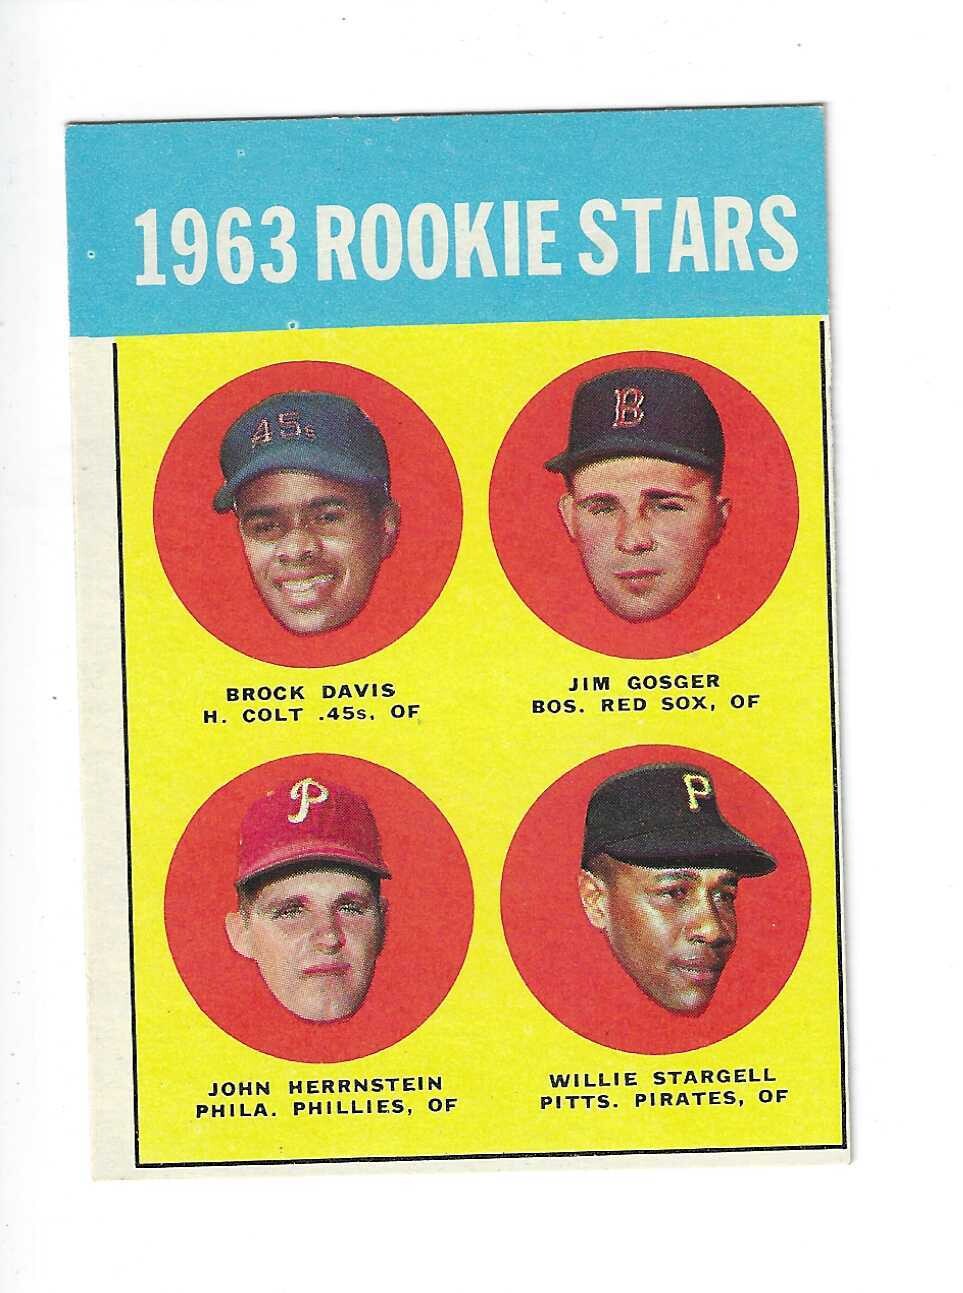 1963 Topps #553 Willie Stargell rookie list $500